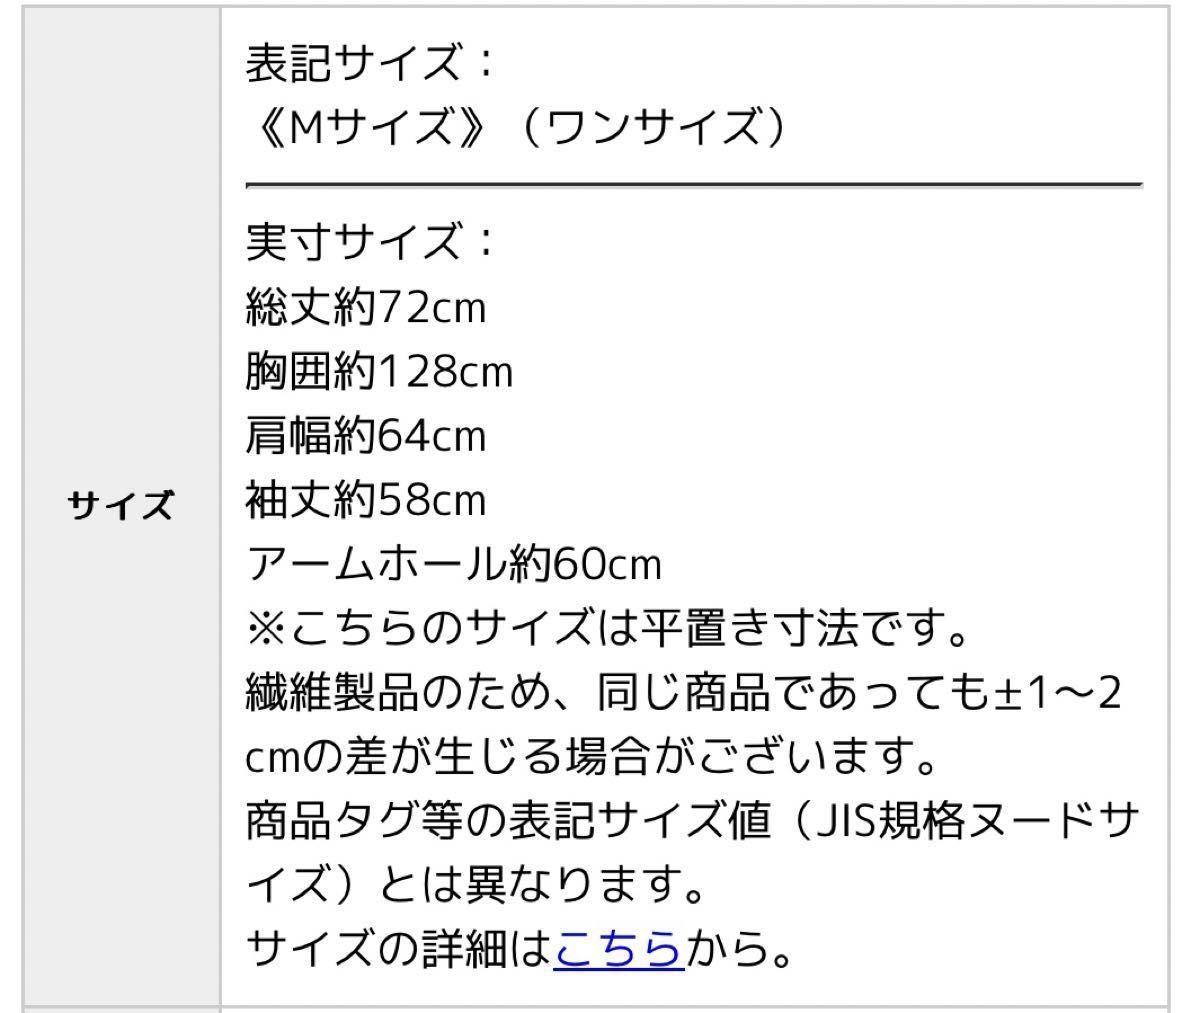 【試着のみ】イーザッカマニアストアーズ フードパーカー ラベンダー ゆったり 大きいサイズ スウェット